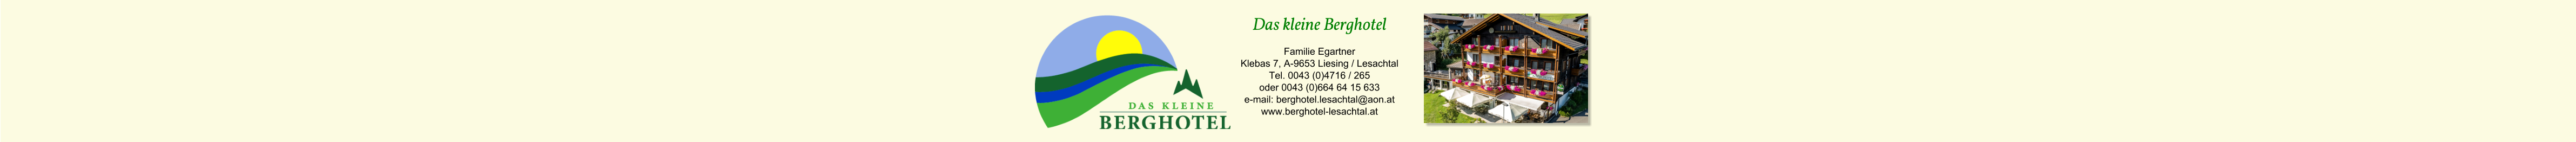 Das kleine Berghotel Familie Egartner Klebas 7, A-9653 Liesing / Lesachtal Tel. 0043 (0)4716 / 265 oder 0043 (0)664 64 15 633 e-mail: berghotel.lesachtal@aon.at www.berghotel-lesachtal.at